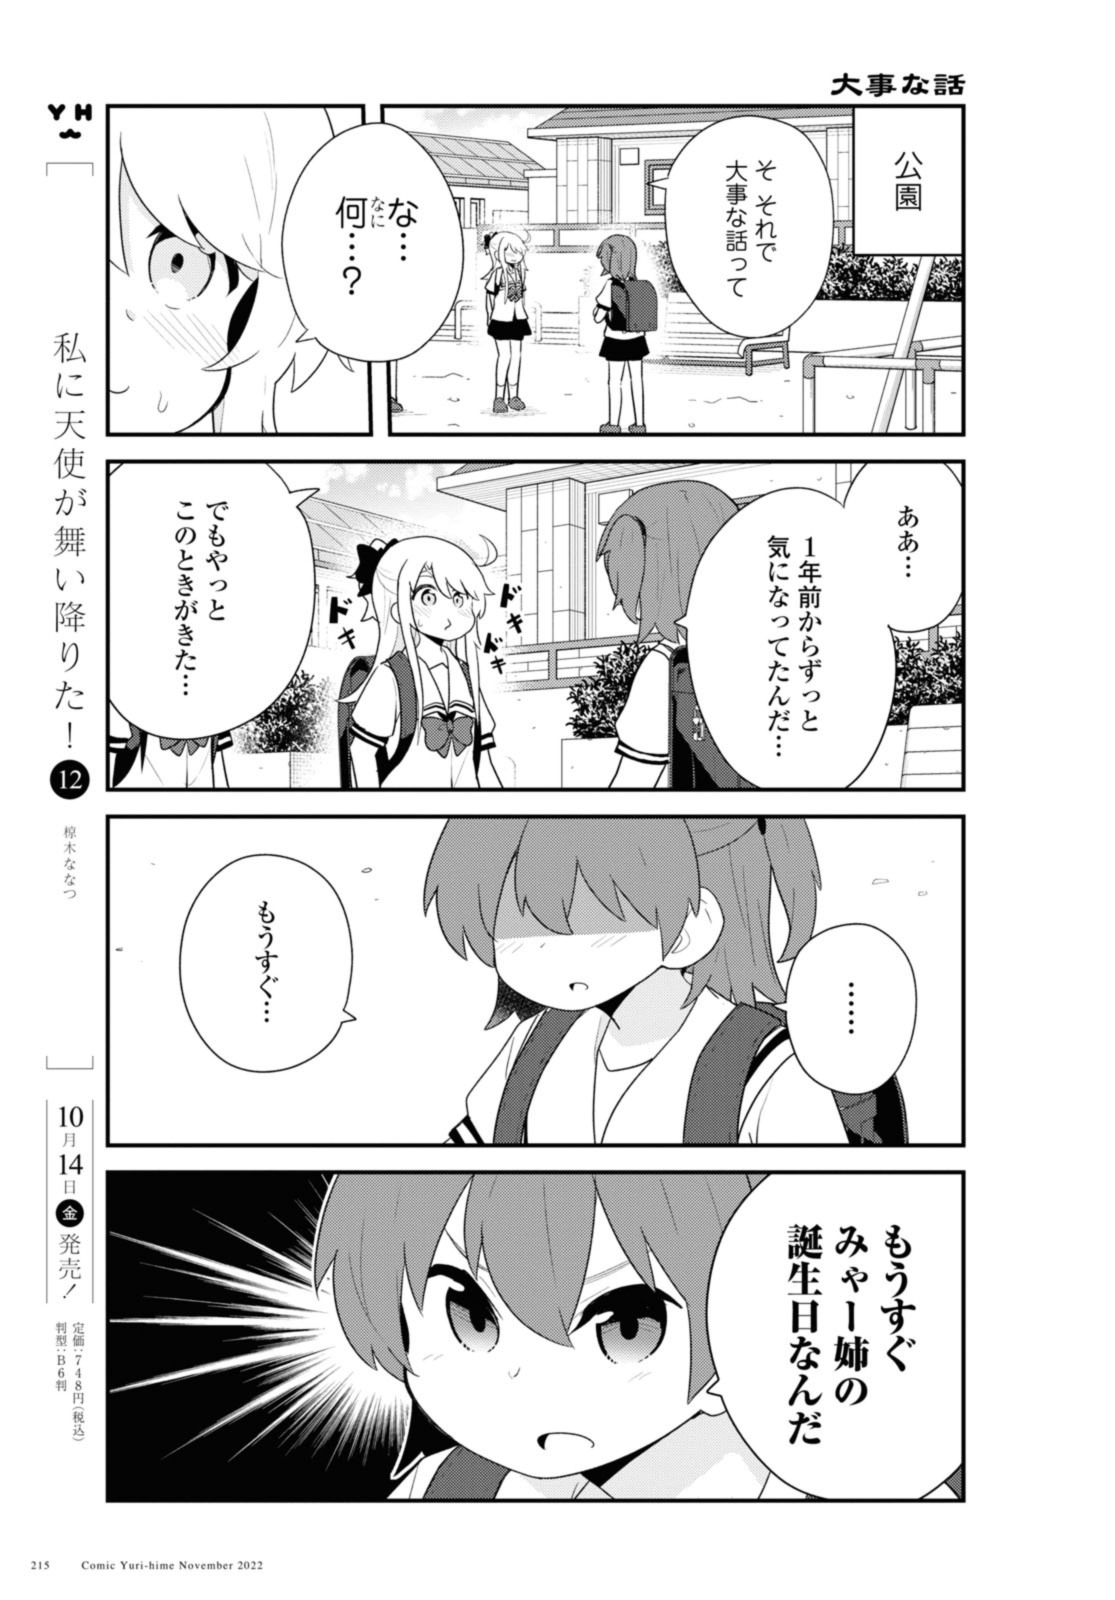 Watashi ni Tenshi ga Maiorita! - Chapter 99 - Page 3